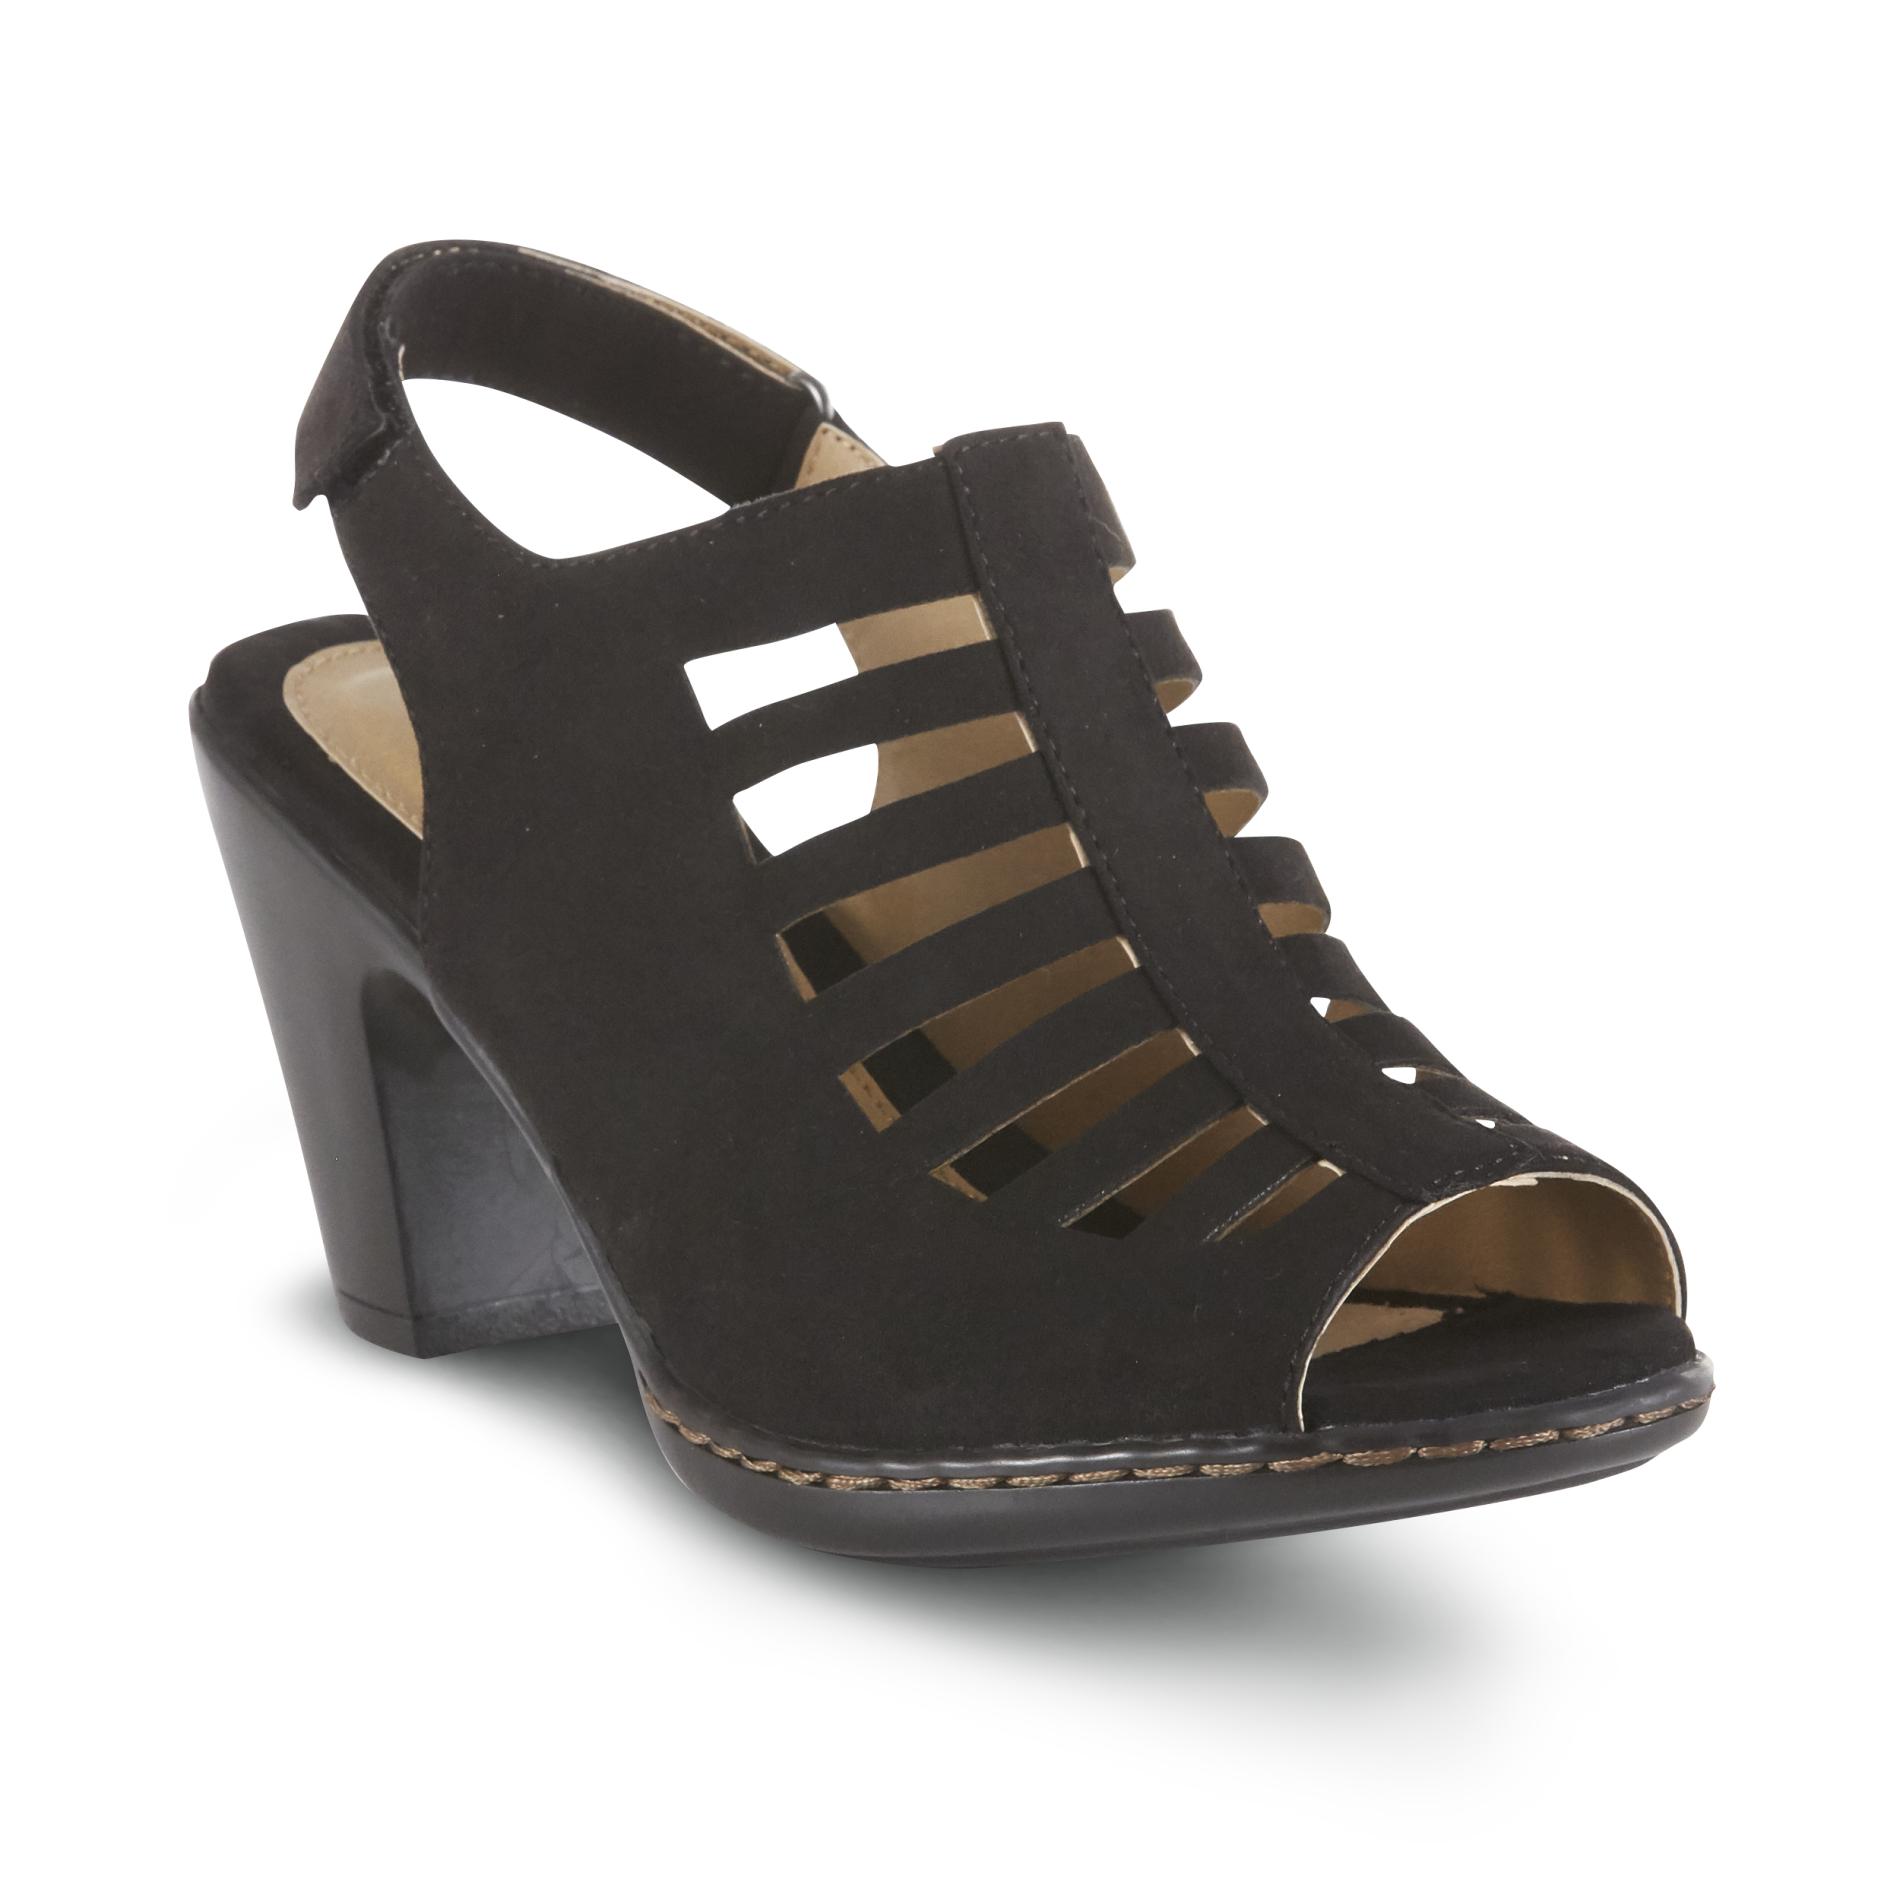 Details about   Caparros Womens Twilight 2 Faux Leather Slingback Dress Sandals Shoes BHFO 1781 